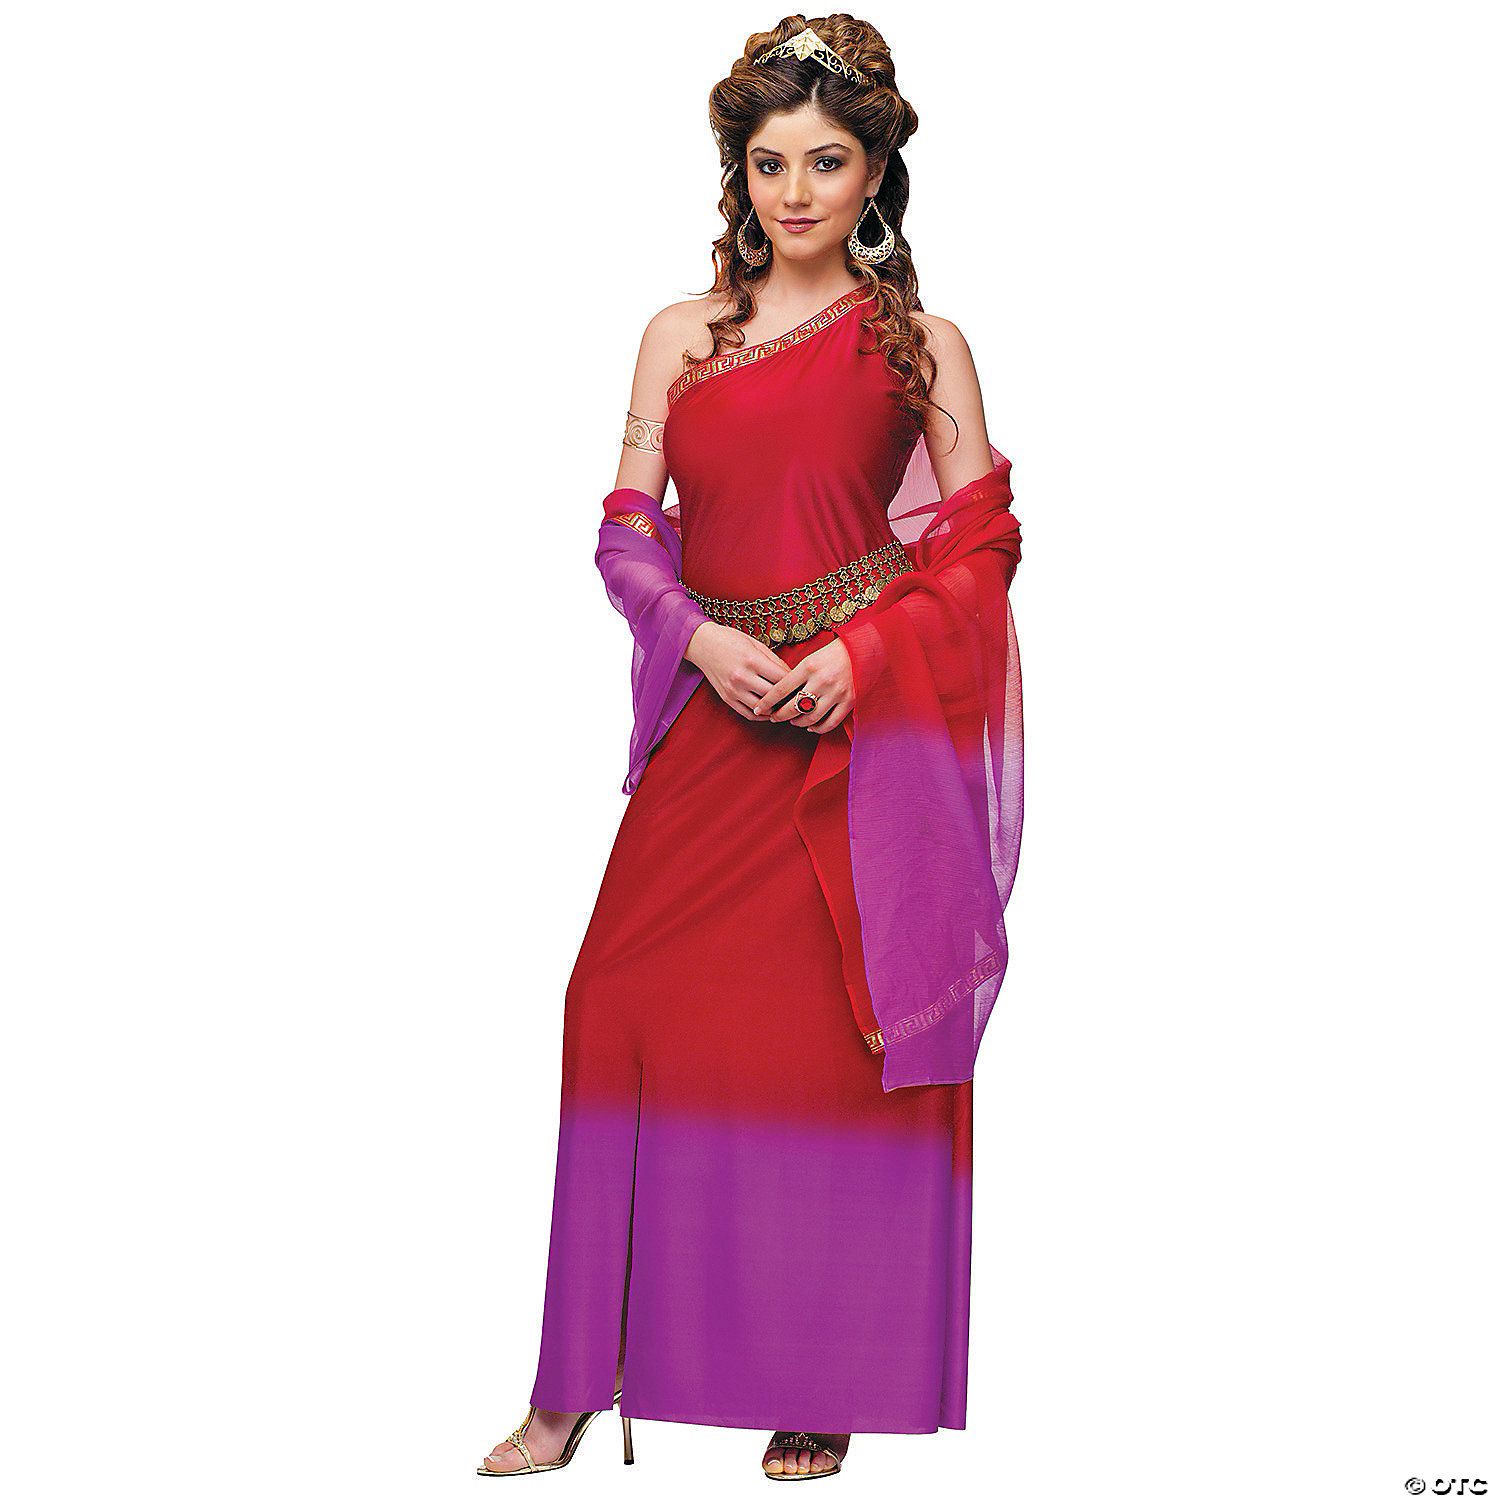 roman lady costume